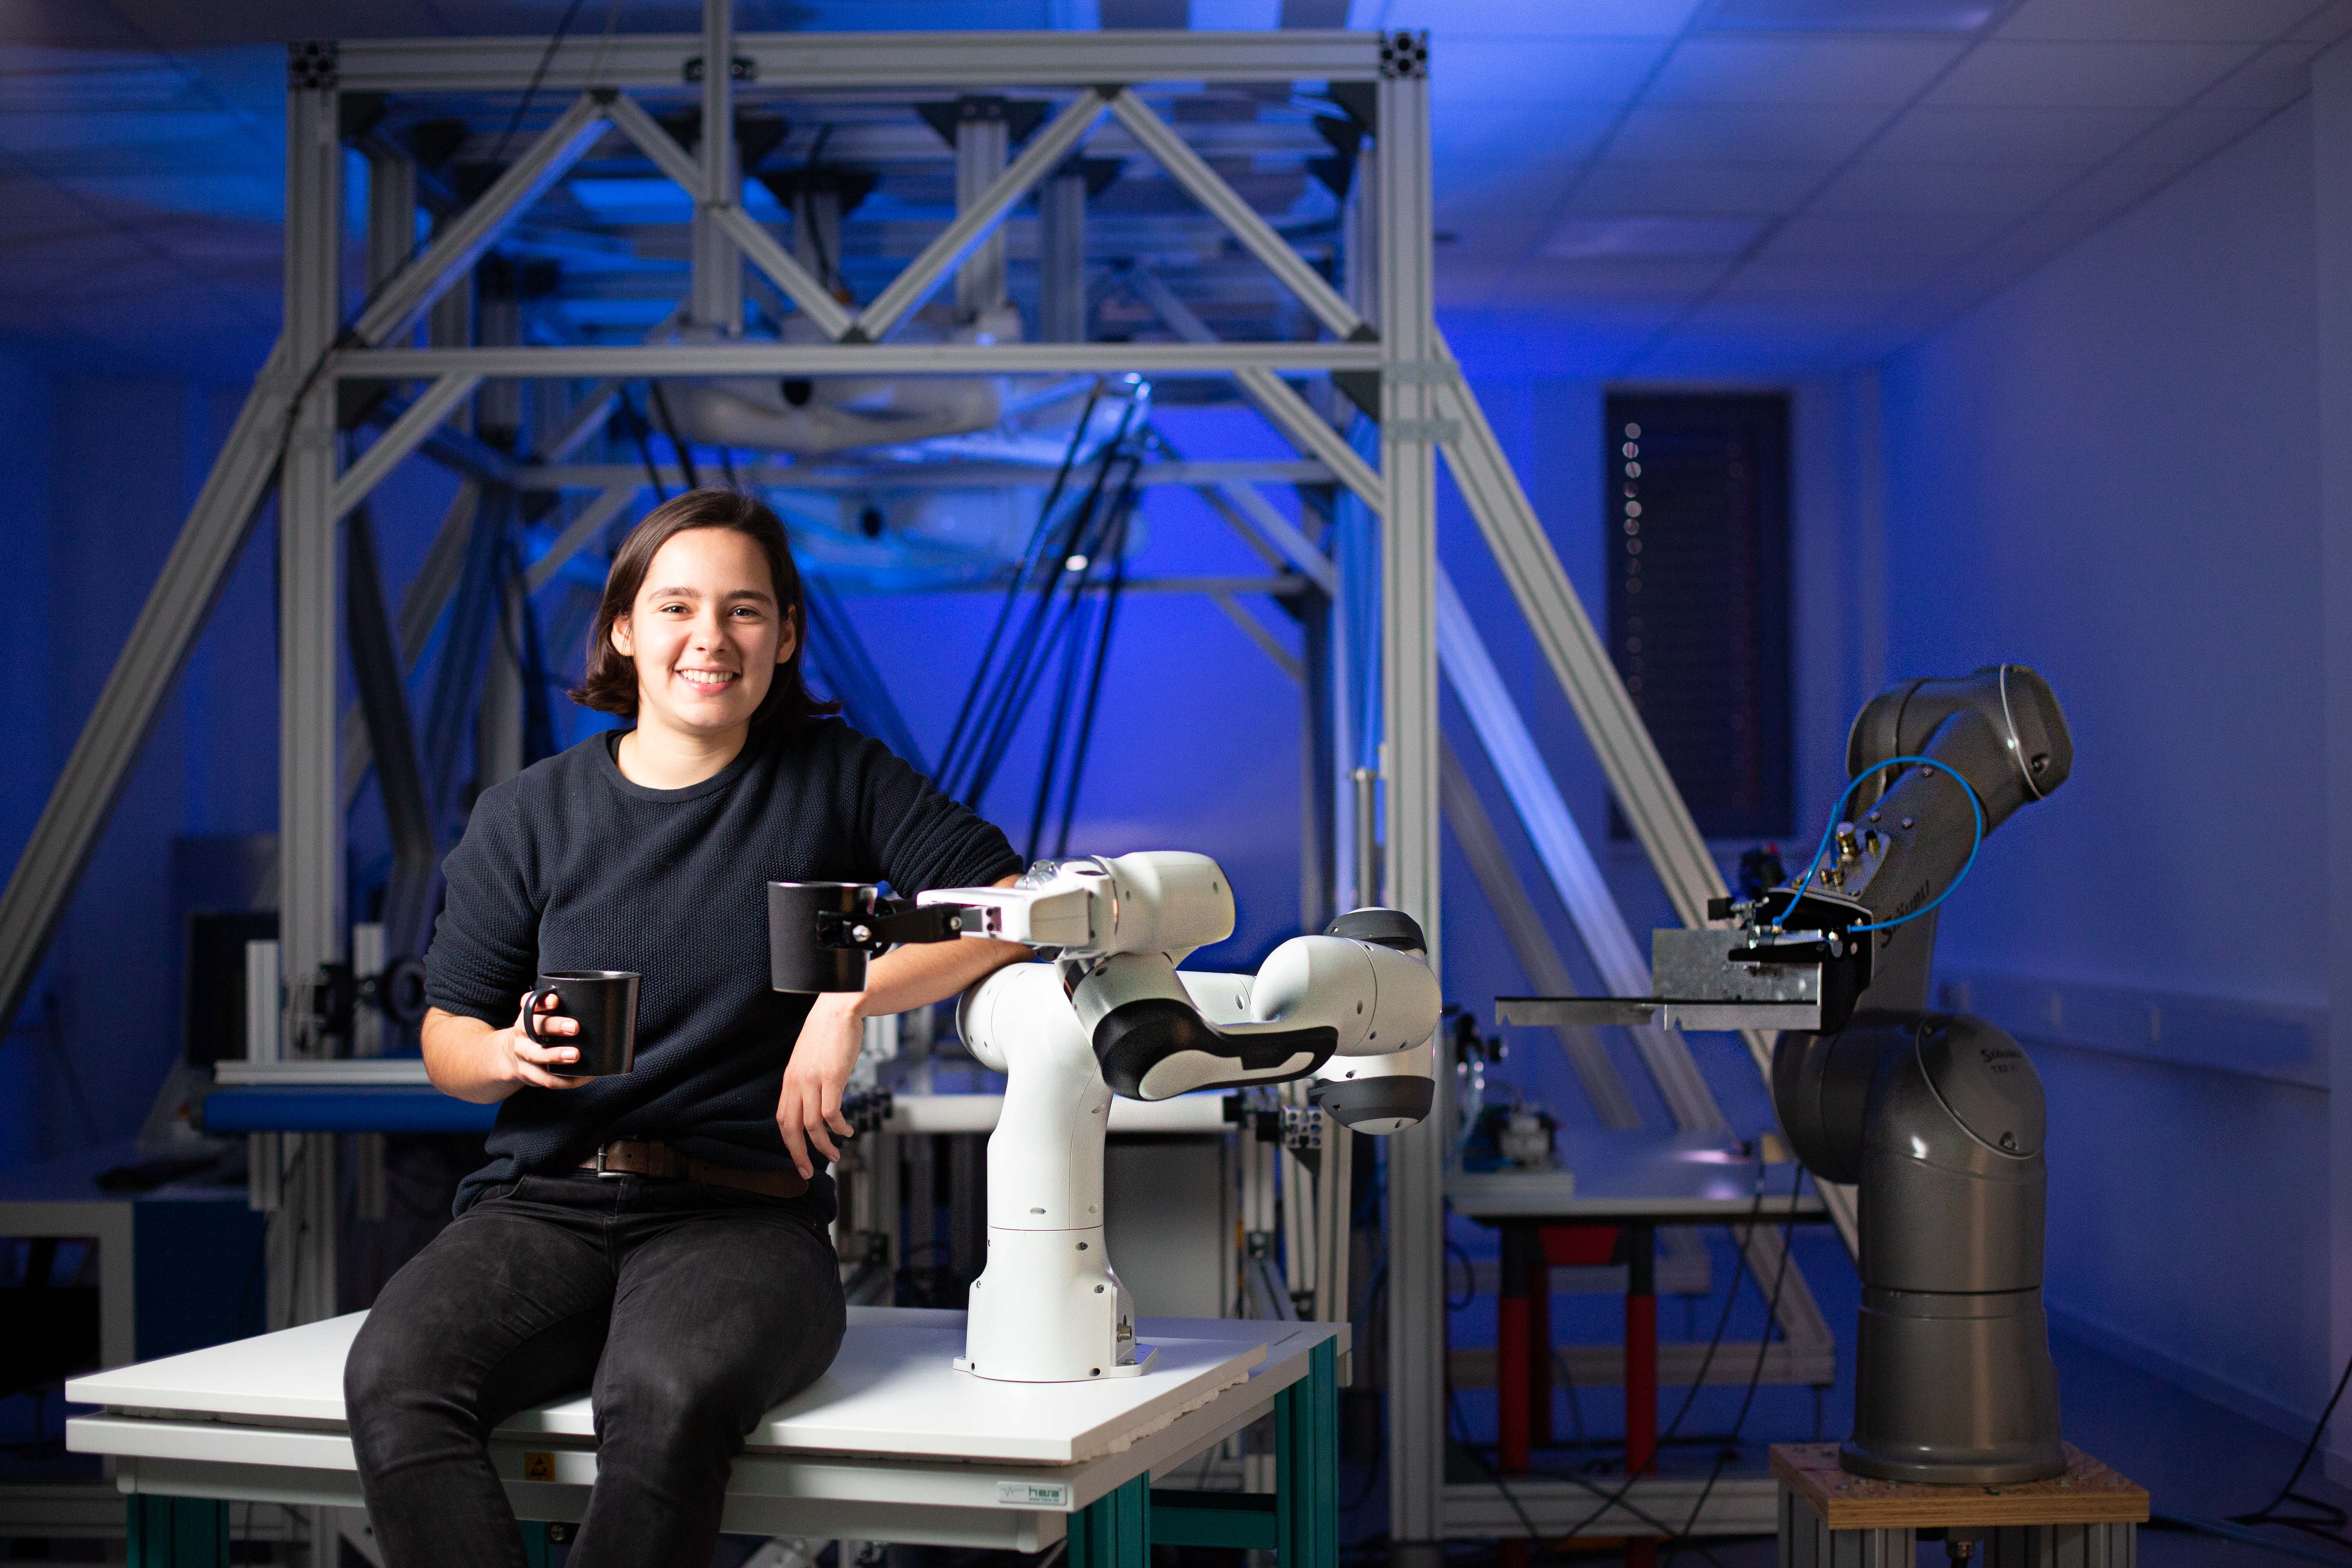 Gerit Saliger sitzt angelehnt an einen Robotergreifarm mit einer Tasse in der Hand. Der Roboterarm hält ebenfalls eine Tasse in der Hand.